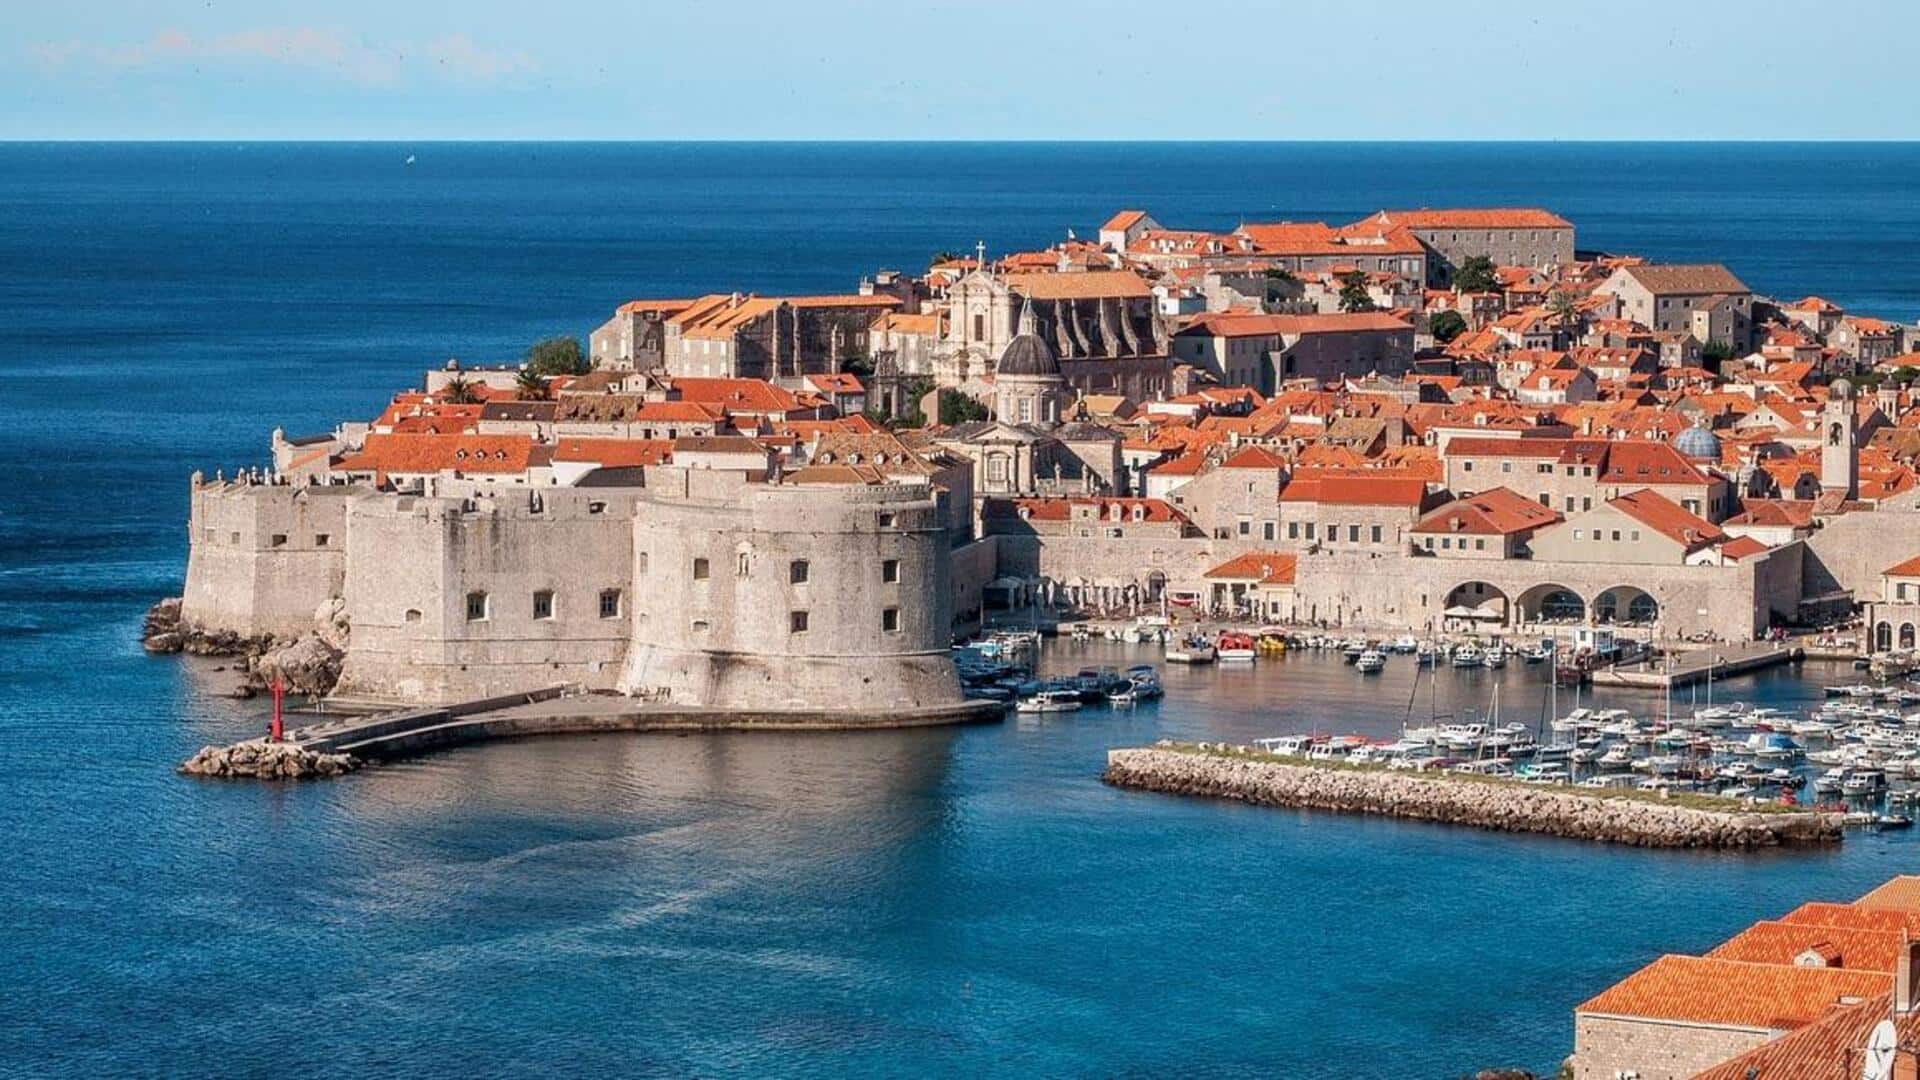 Temukan dunia fantasi Dubrovnik dengan rekomendasi perjalanan berikut 